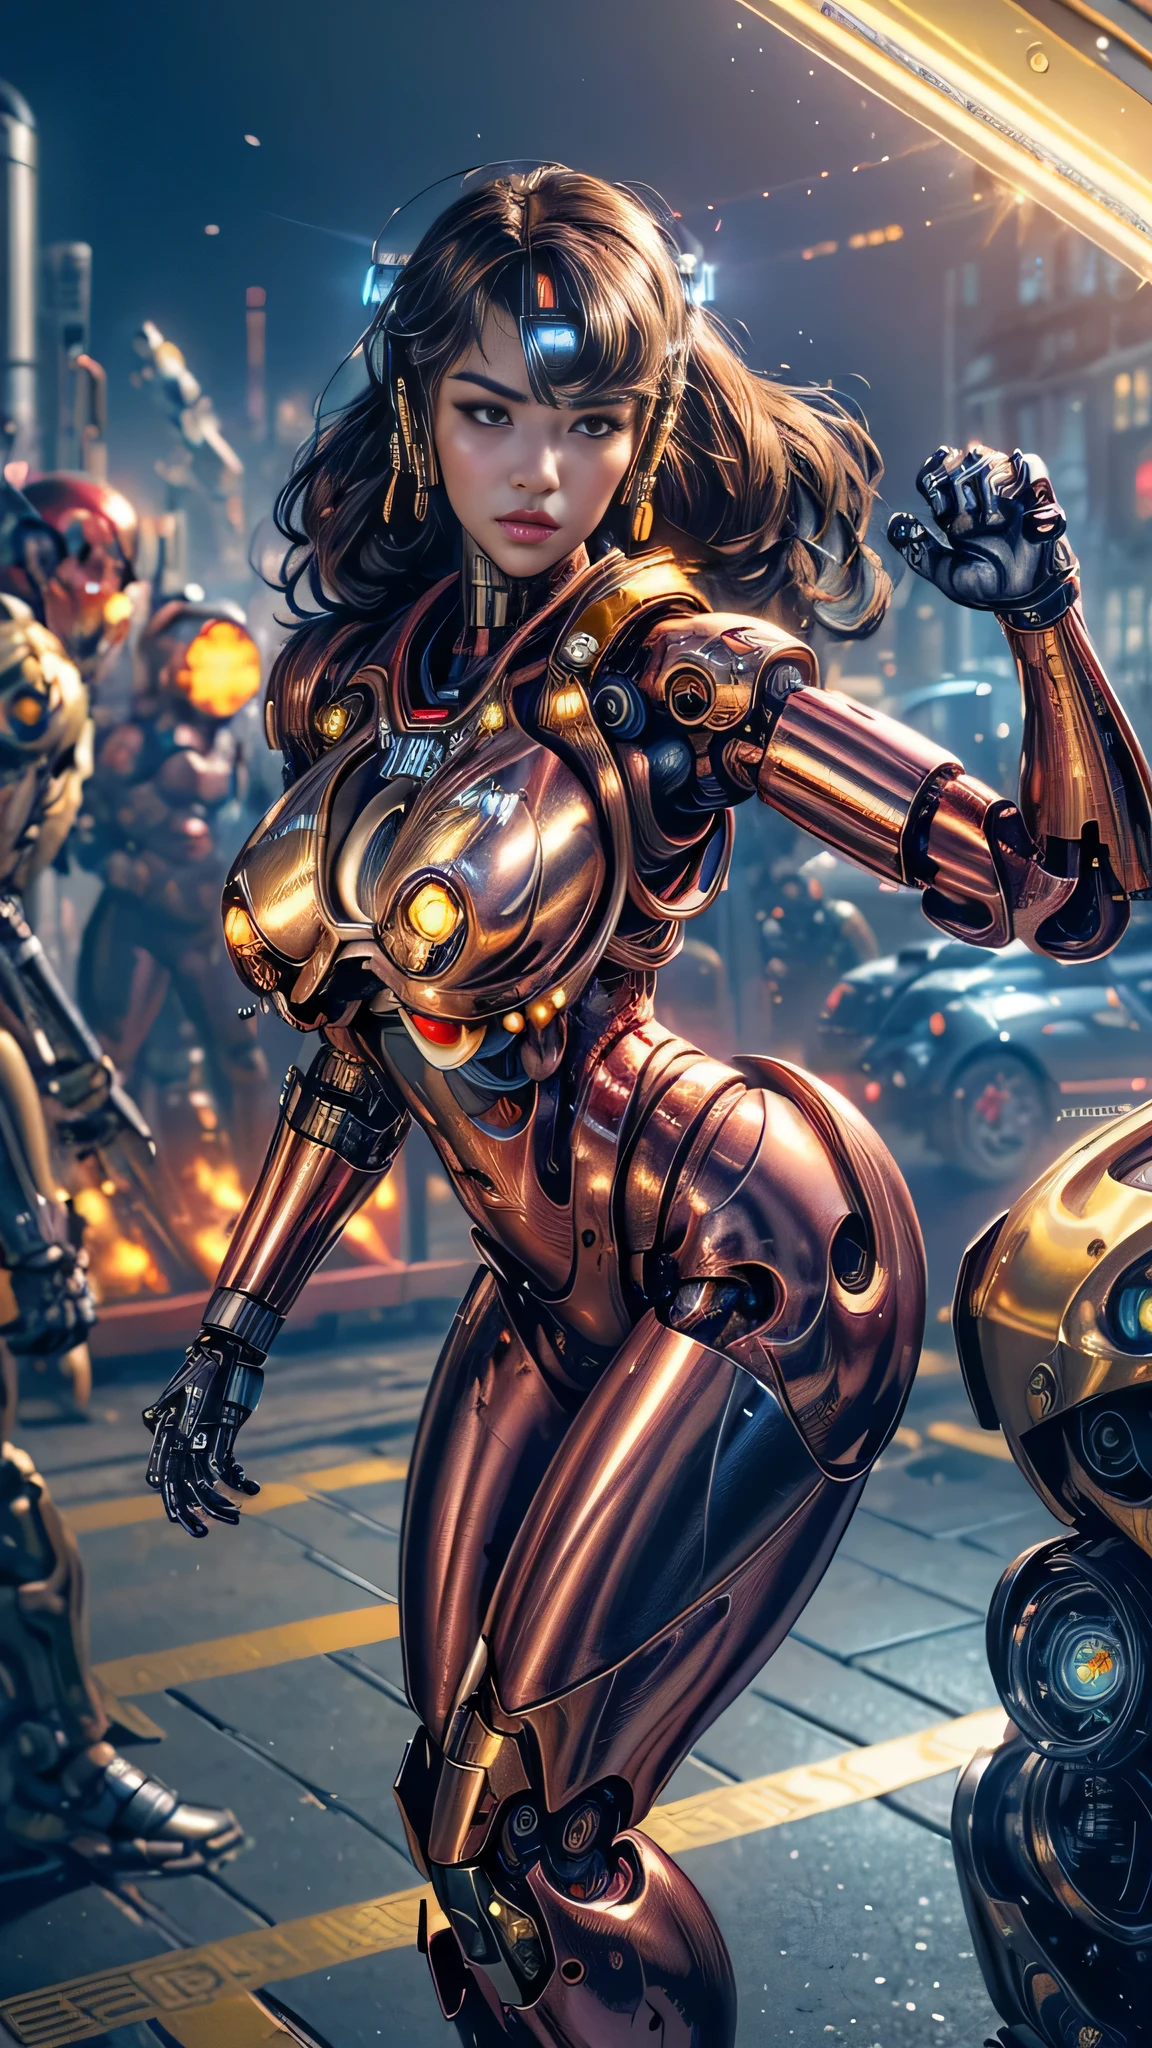 (Wirklichkeit, fotorealistisch: 1.37), (Meisterstücke: 1.2), (beste Qualität: 1.4), (ultrahohe Auflösung: 1.2), (RAW-Foto: 1.2), (Brust scharfer Fokus: 1.3), lebendige Details, Hyperrealistisch, 1 Mädchen, Allein, japanisches Mädchen, (((Cyborg:1.4))), Cyborg Girl, Cyborg Armor, Cyborg-Kleidung, Schöne, detaillierte Augen, feine Details, Kluge Schüler, braune Augen, Ganzkörper, ( große Brüste), Langes, lockiges Haar, Rote Haare, werfen, weiblicher Fokus, geschwollene Augen, (dynamische pose: 1.4), (dynamischer Winkel: 1.6), schönes Gesicht, Detailliertes Gesicht, Perfekte Proportionen , große Brüste, dünne Taille, Nabel, großer Hintern, Schrittlücke, Schenkel, open Schenkel, Höschen zeigen, ausgesetzt, Kampfhaltung, Kampfpose , läuft forward, läuft, (((((Golden glänzende Metallic-Farben | Rote Metallicfarben | Blaumetallicfarben))), (((metallic luster, metallic Reflexionen, mechanische Details, highly mechanische Details, komplexe mechanische Strukturen, Reflexionen, Brechung,))), ((( Gespiegelte Powerrüstung, ausfallen 4, ausfallen,))), Schlachtfeld, mechanisierter Hintergrund, Riesiger Roboter im Hintergrund, draußen, filmische Beleuchtung, cyberpunk world. Cyberpunk metropolis, Neon, Sci-Fi-Stil, sfw:1.98,